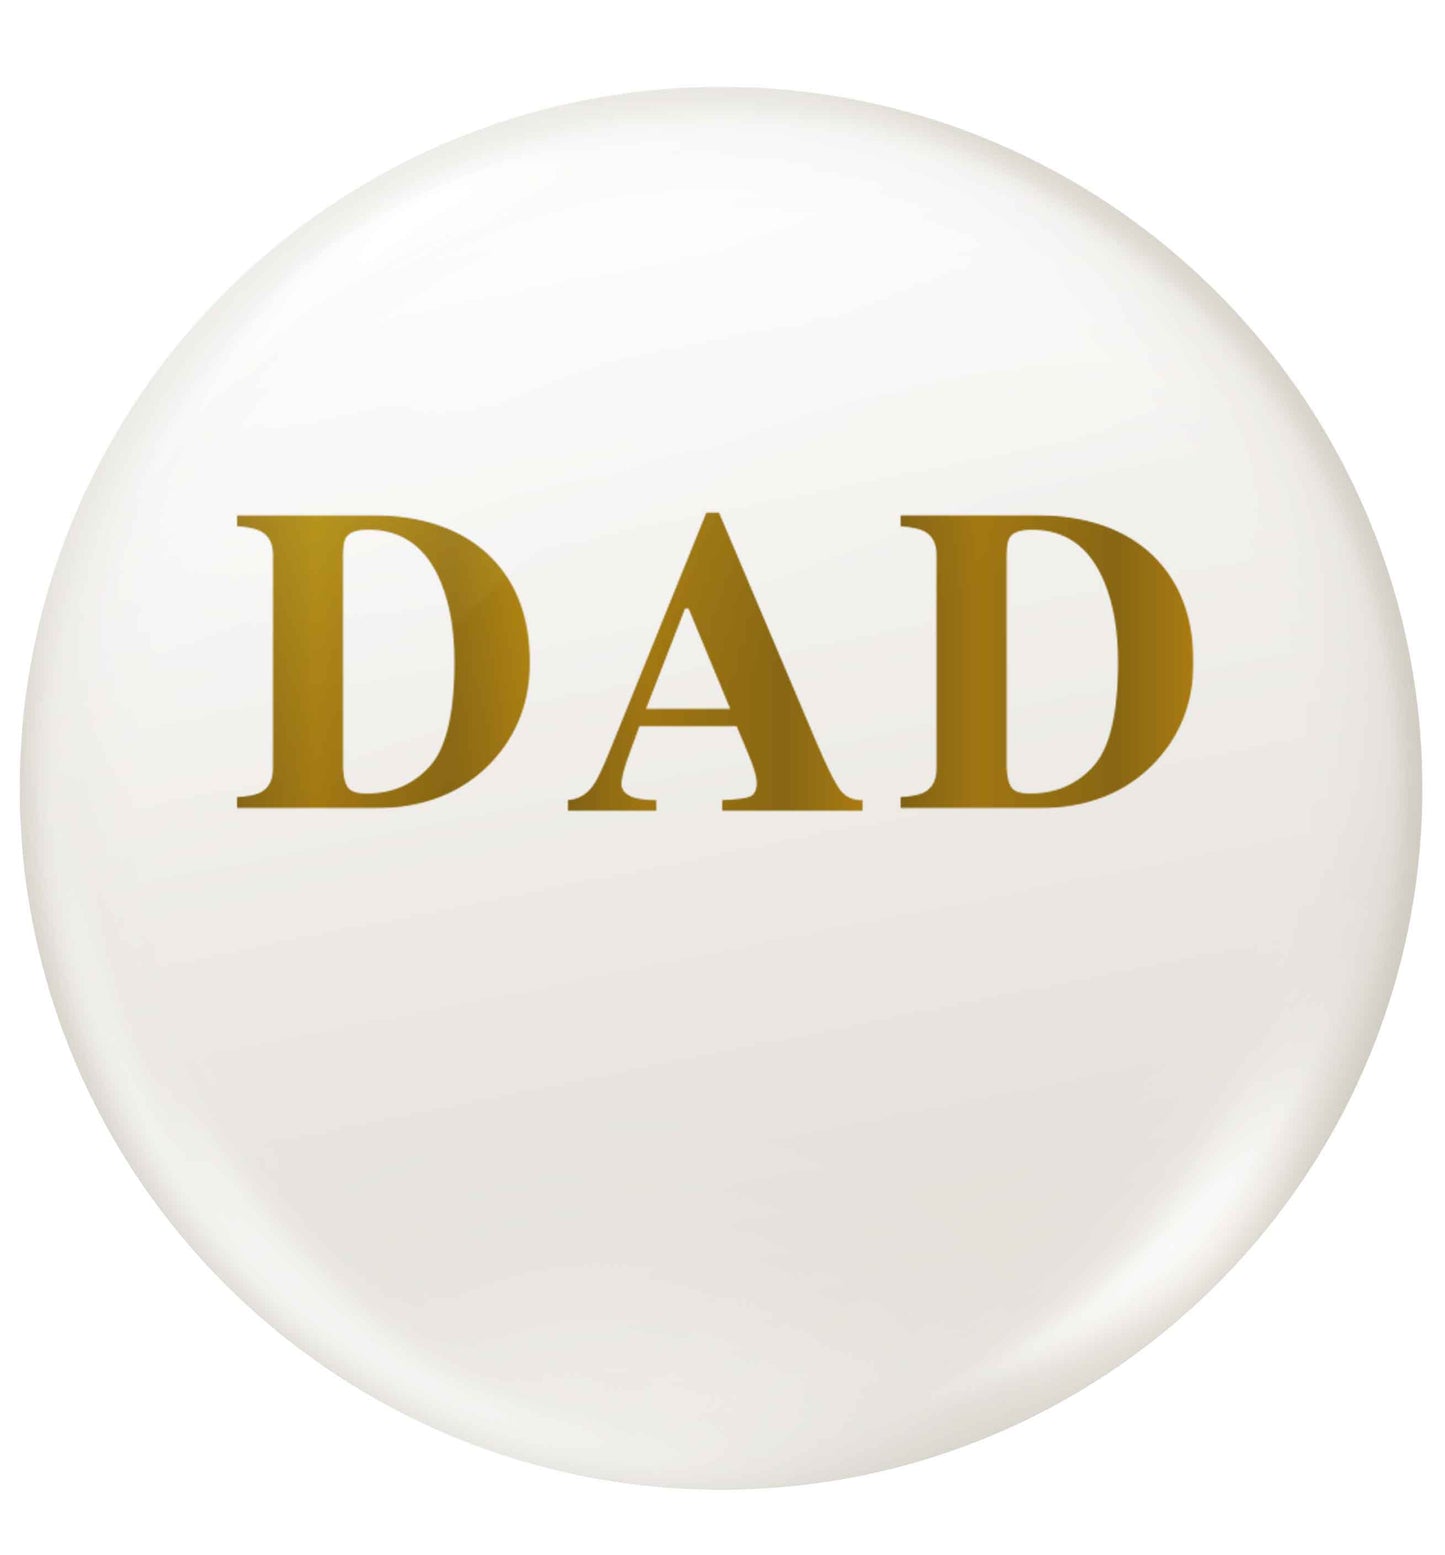 Dad small 25mm Pin badge